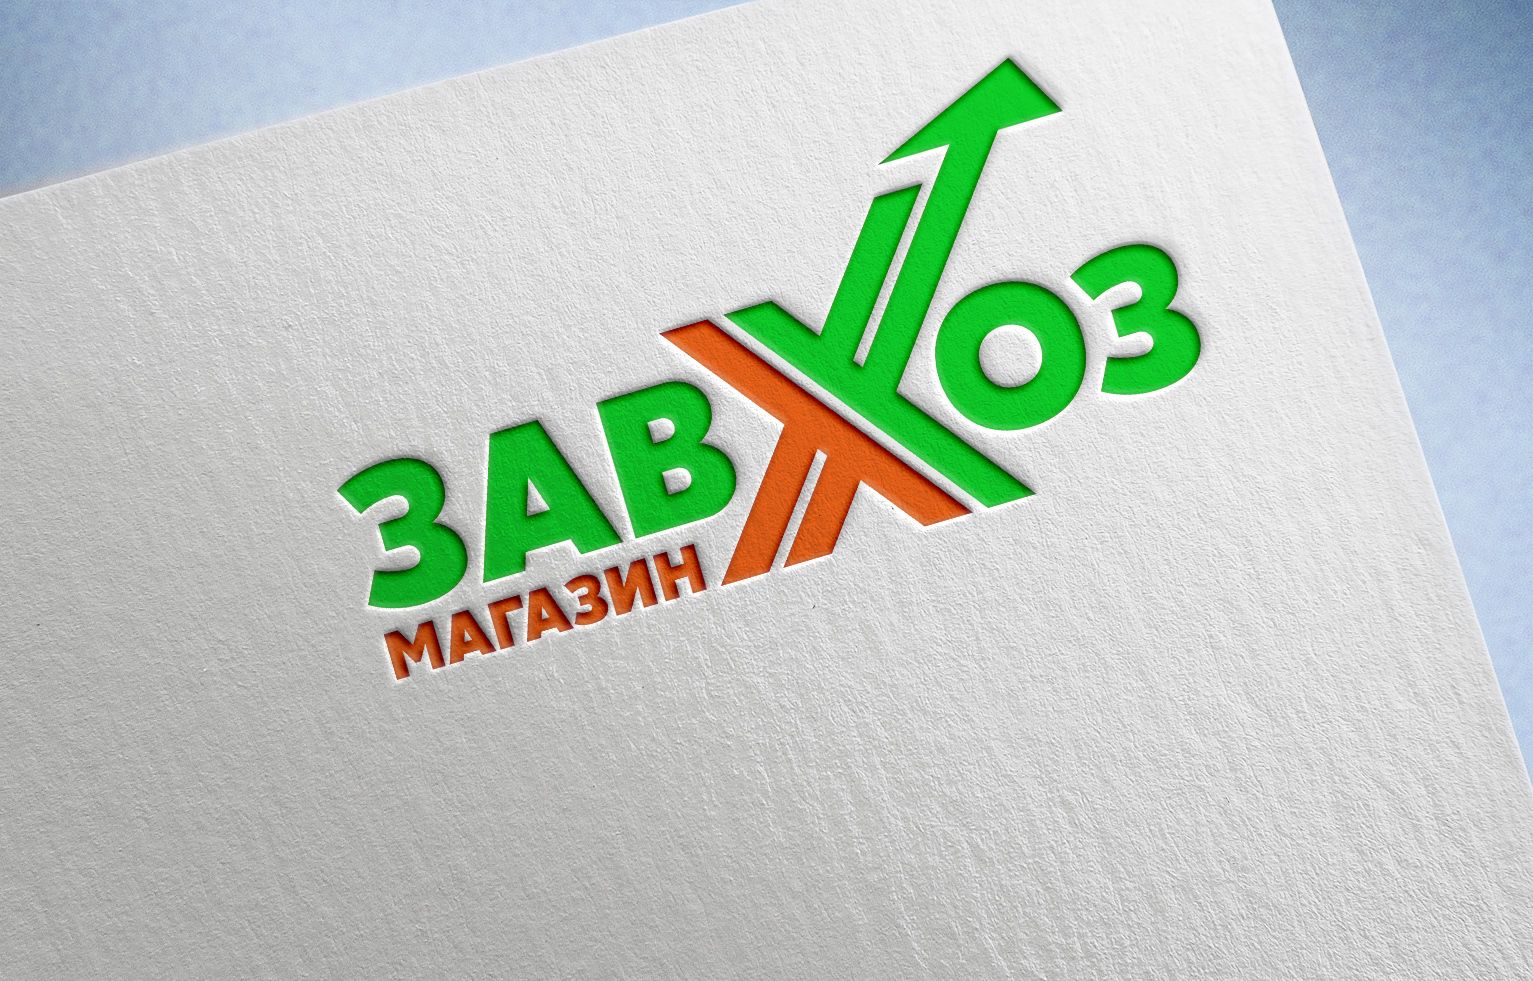 Лого и фирменный стиль для сети магазинов ЗАВХОЗ - дизайнер Mila_Tomski